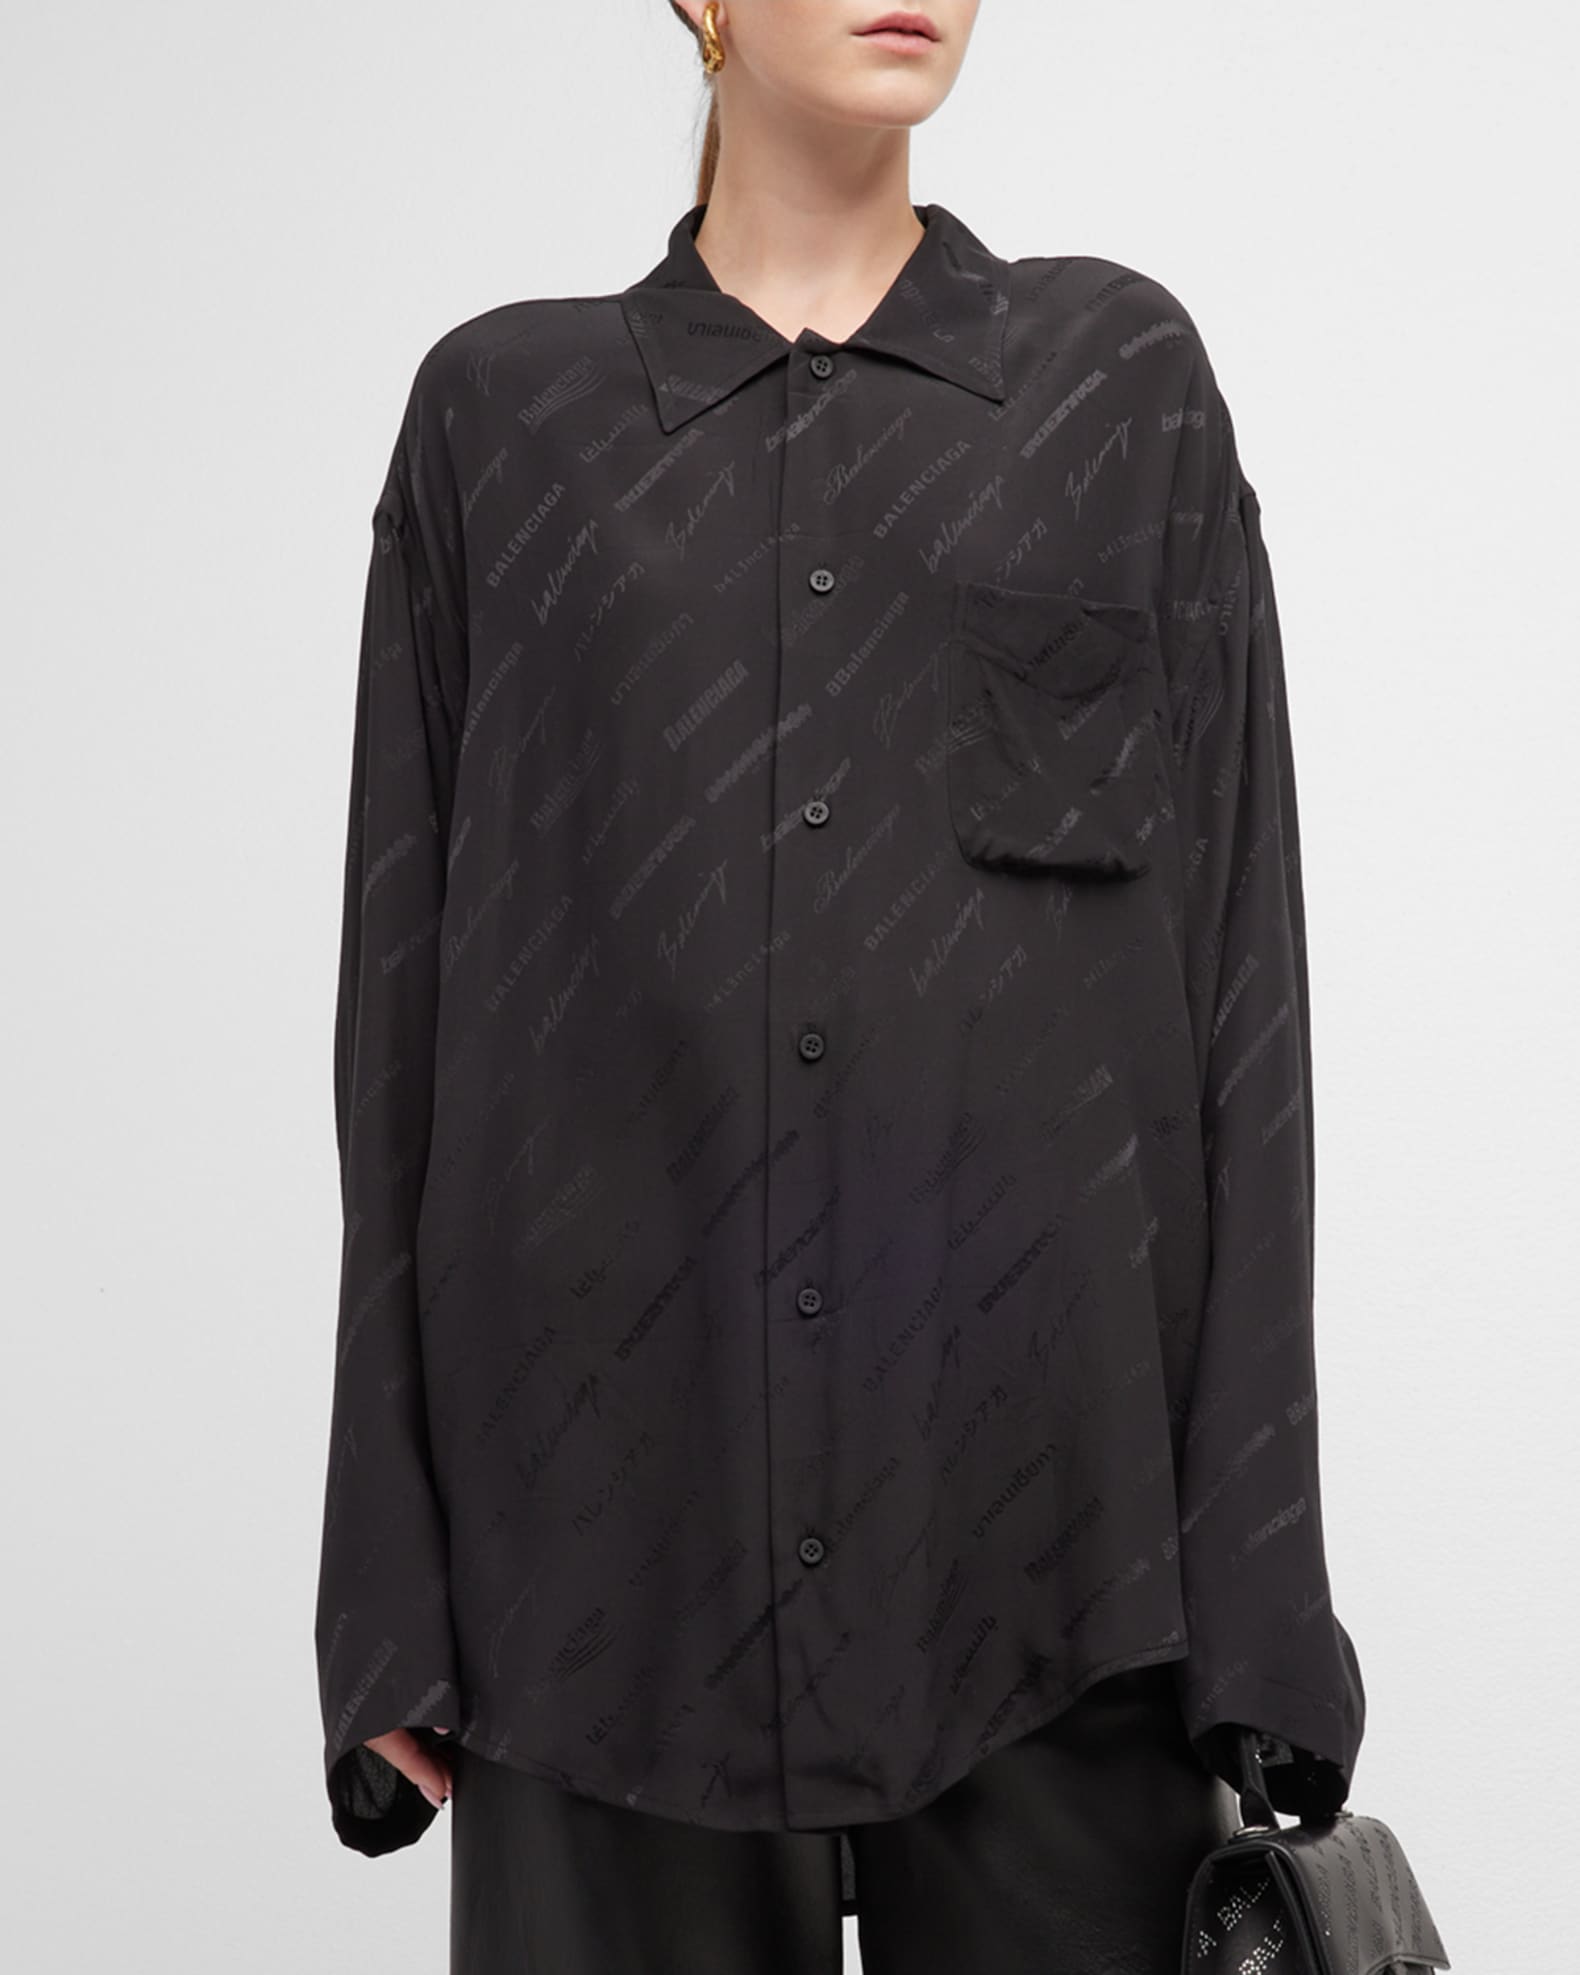 Balenciaga Logomania All Over Minimal Shirt | Neiman Marcus